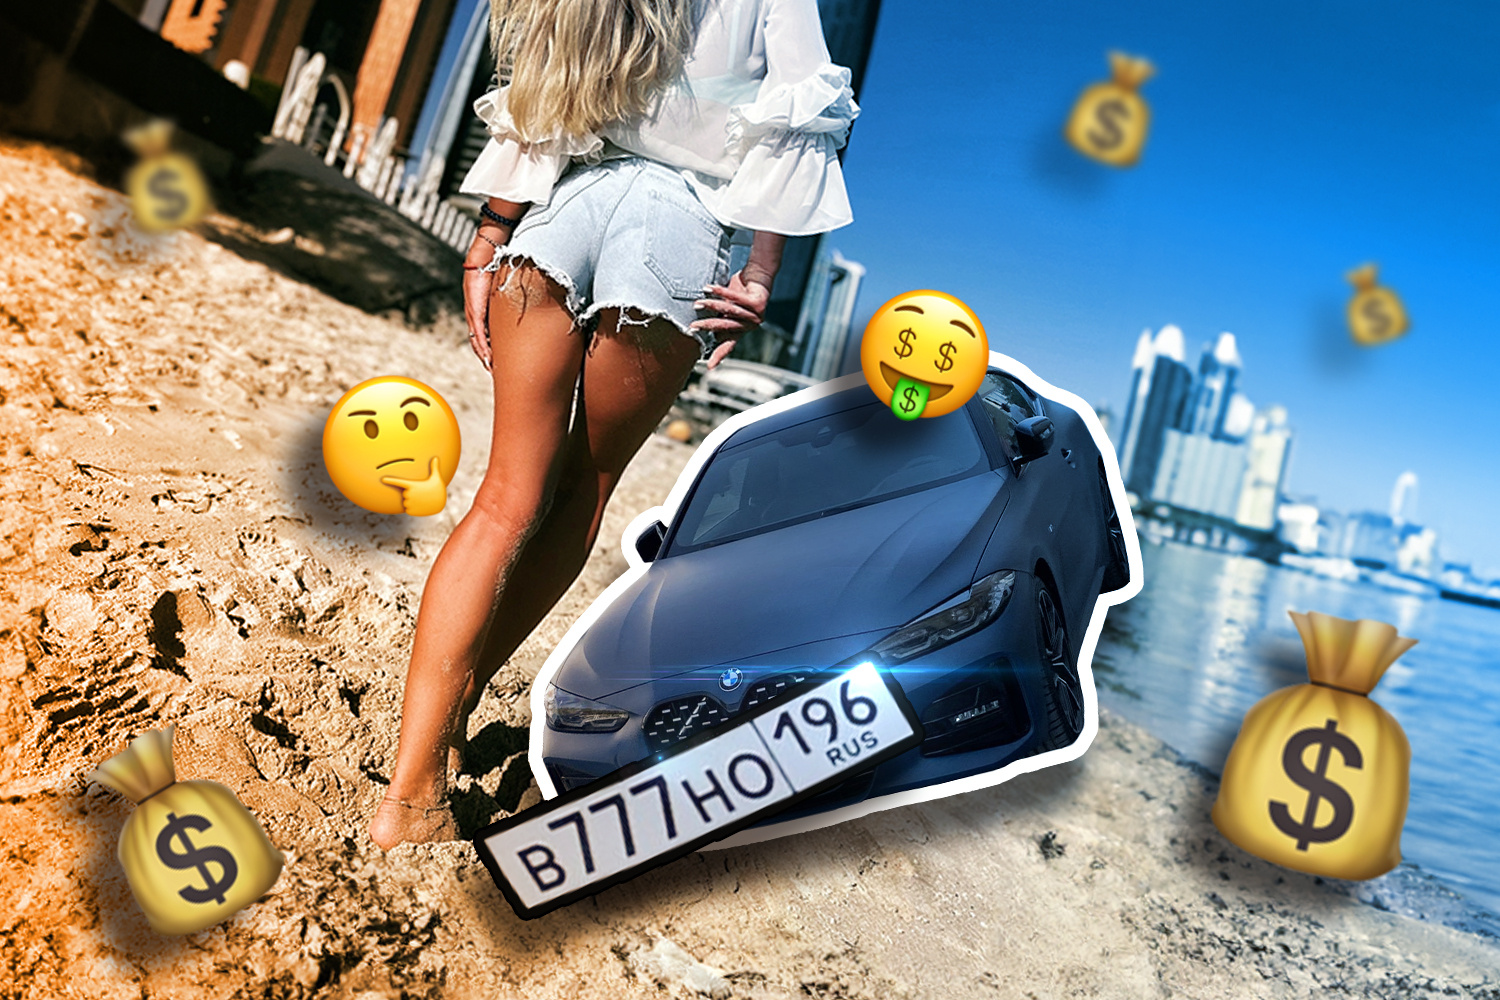 Любители роскошной жизни: кто гоняет по Екатеринбургу на шикарных авто с «блатными» номерами 777